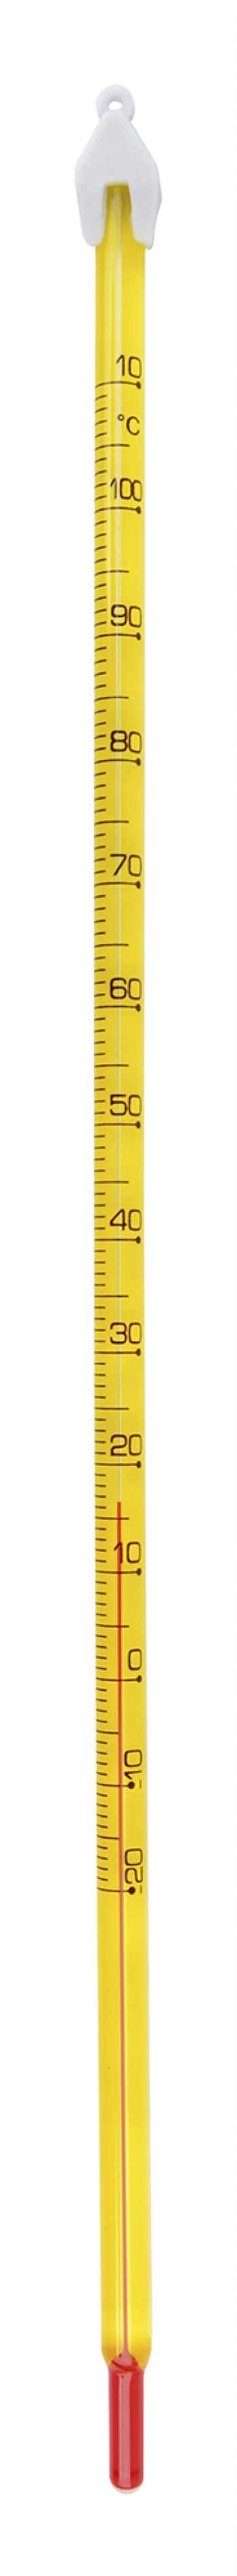 Budget termometer - -20°C til 100°C